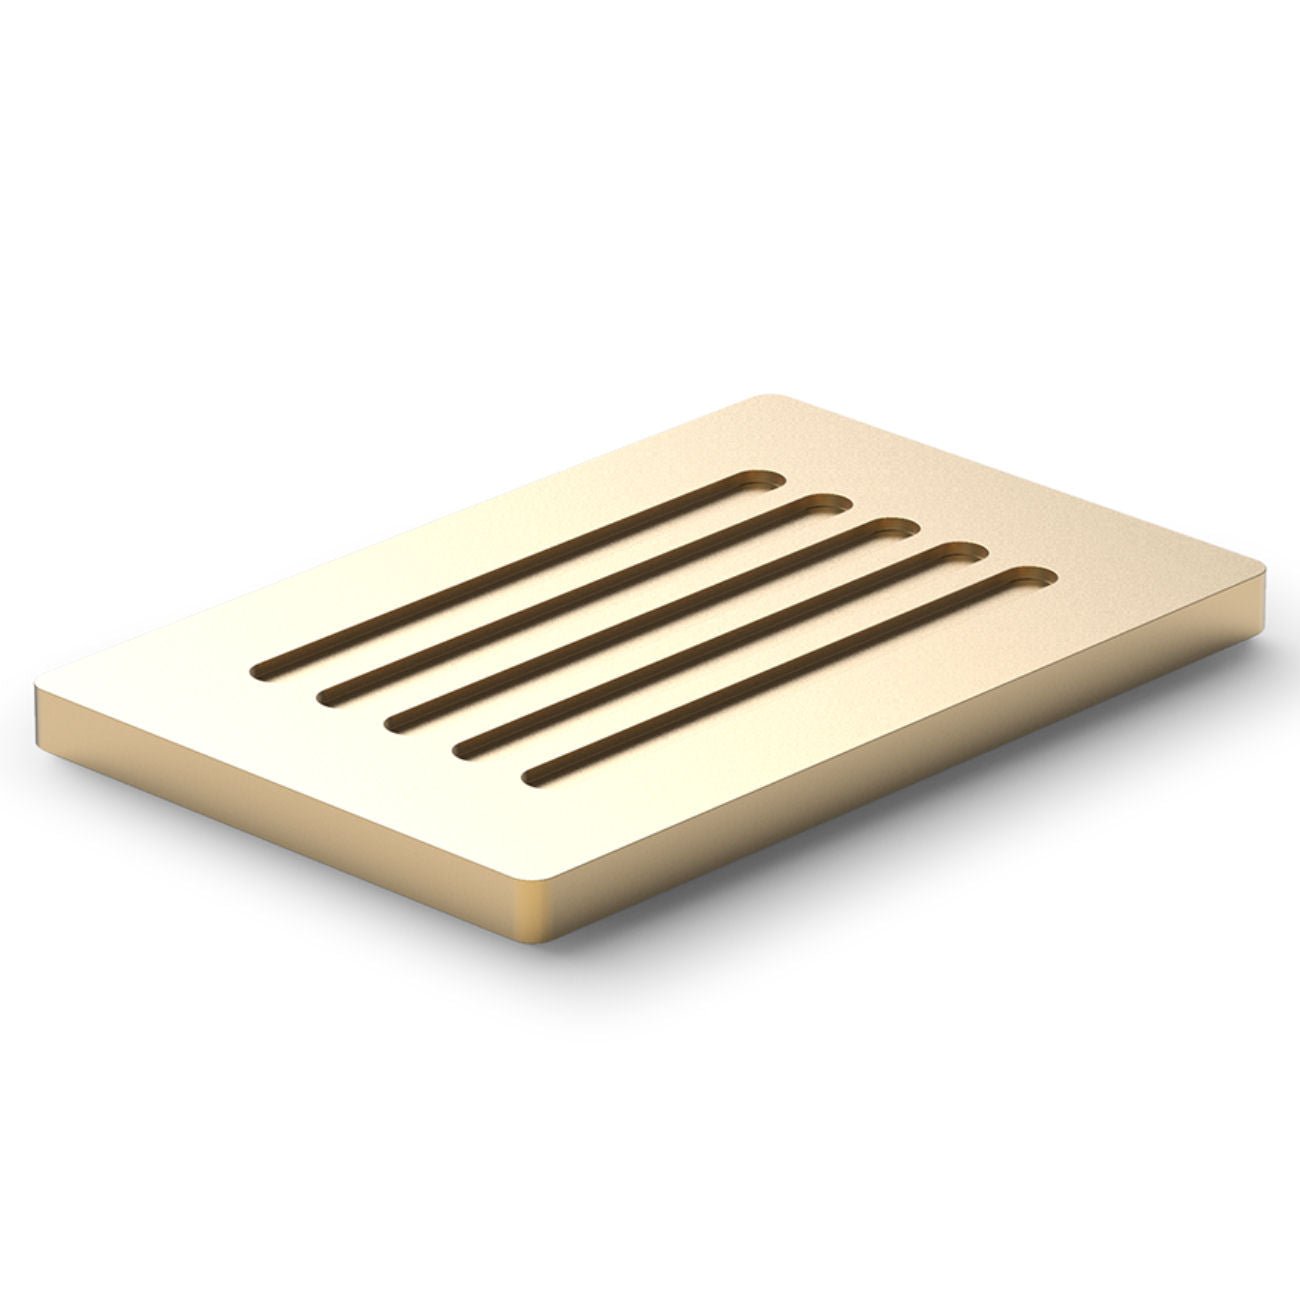 Matt Gold Soap Bench by Decor Walther - |VESIMI Design|